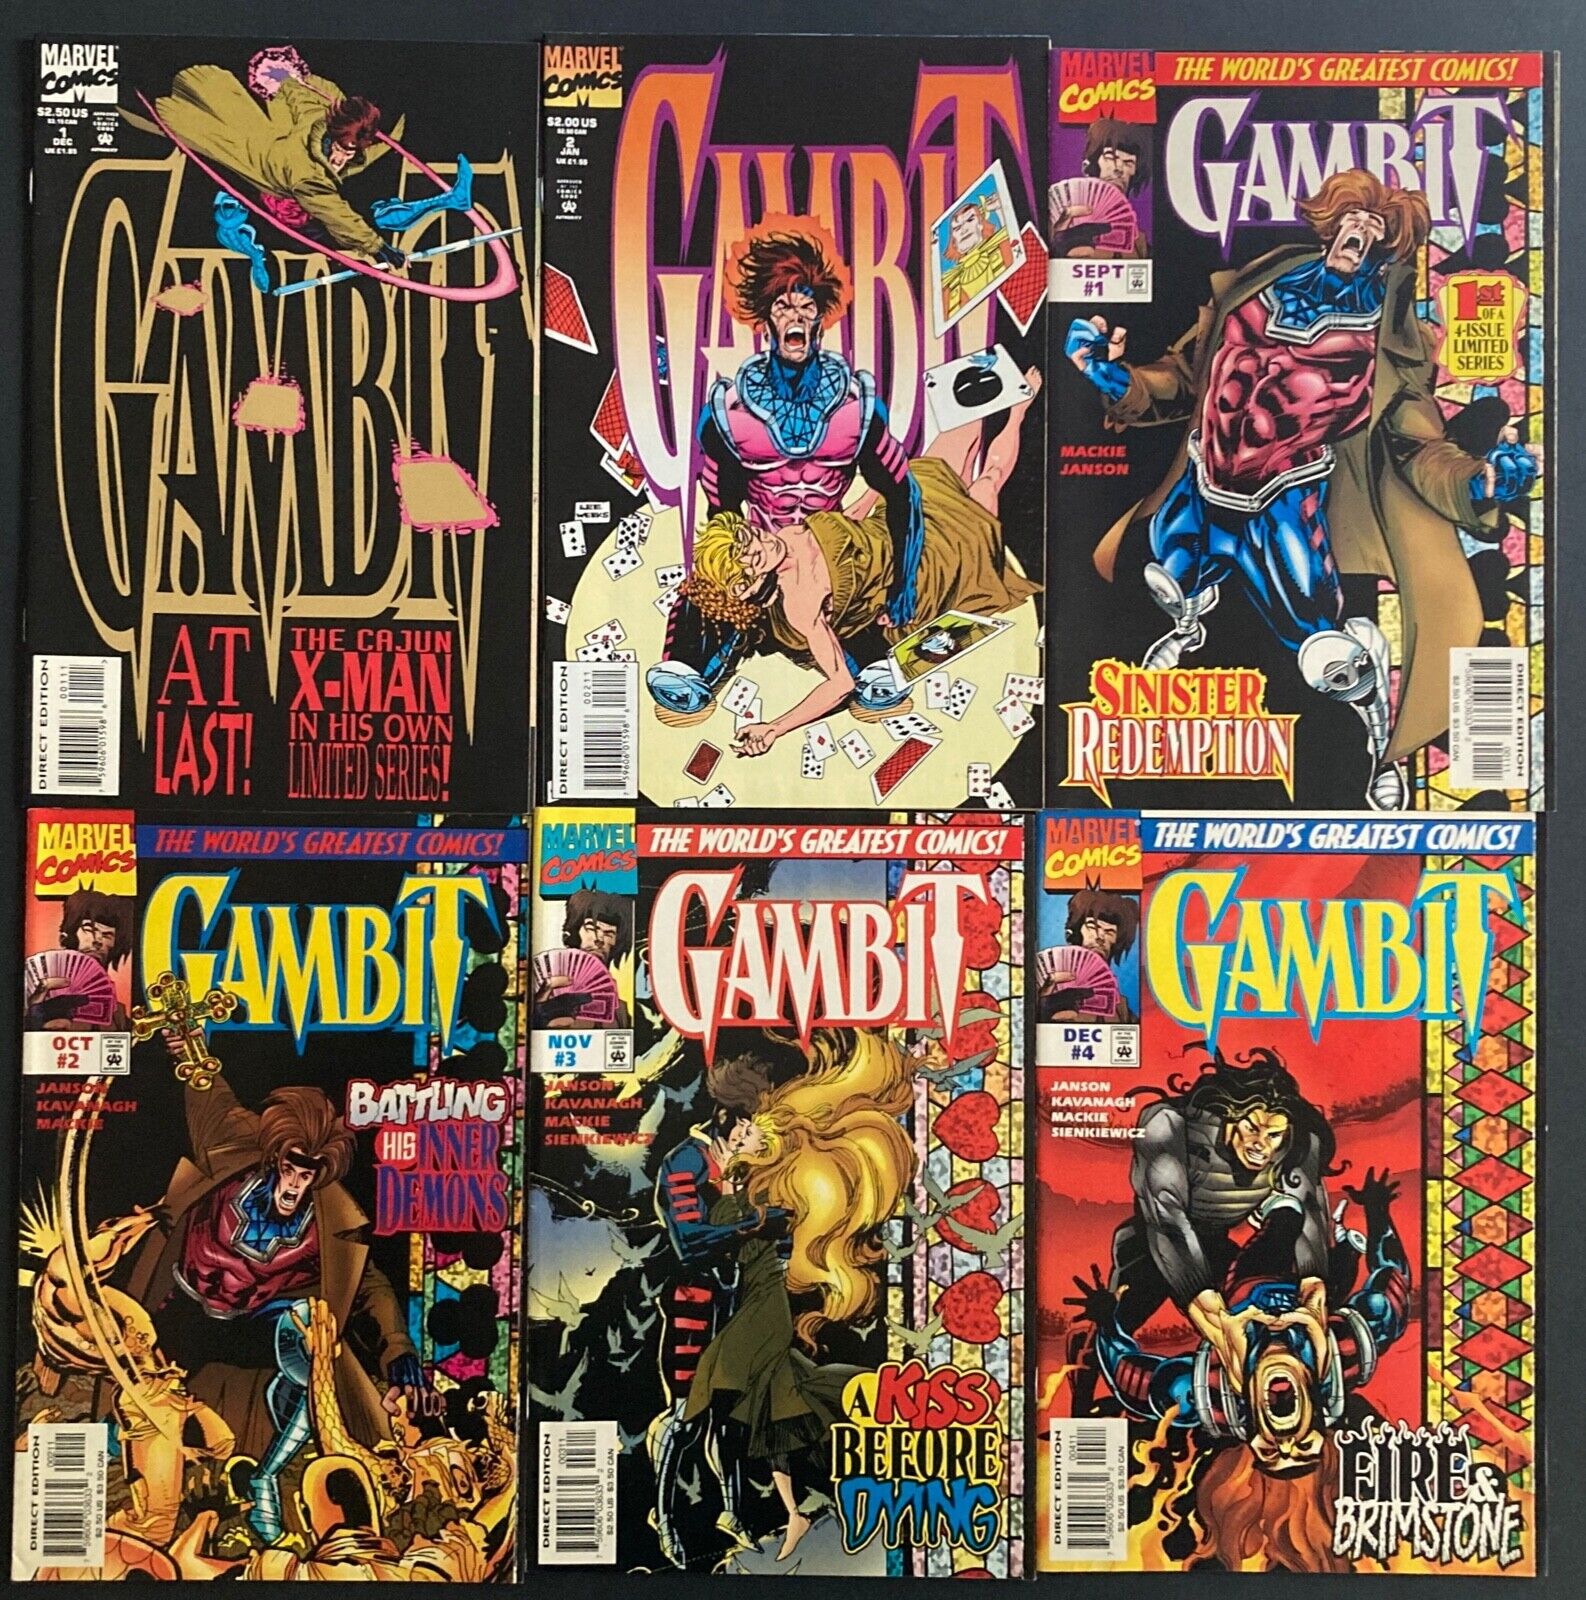 GAMBIT vol. 1 #1-2; vol. 2 #1-4 (Marvel 1996) mini-series by Mackie & Weeks